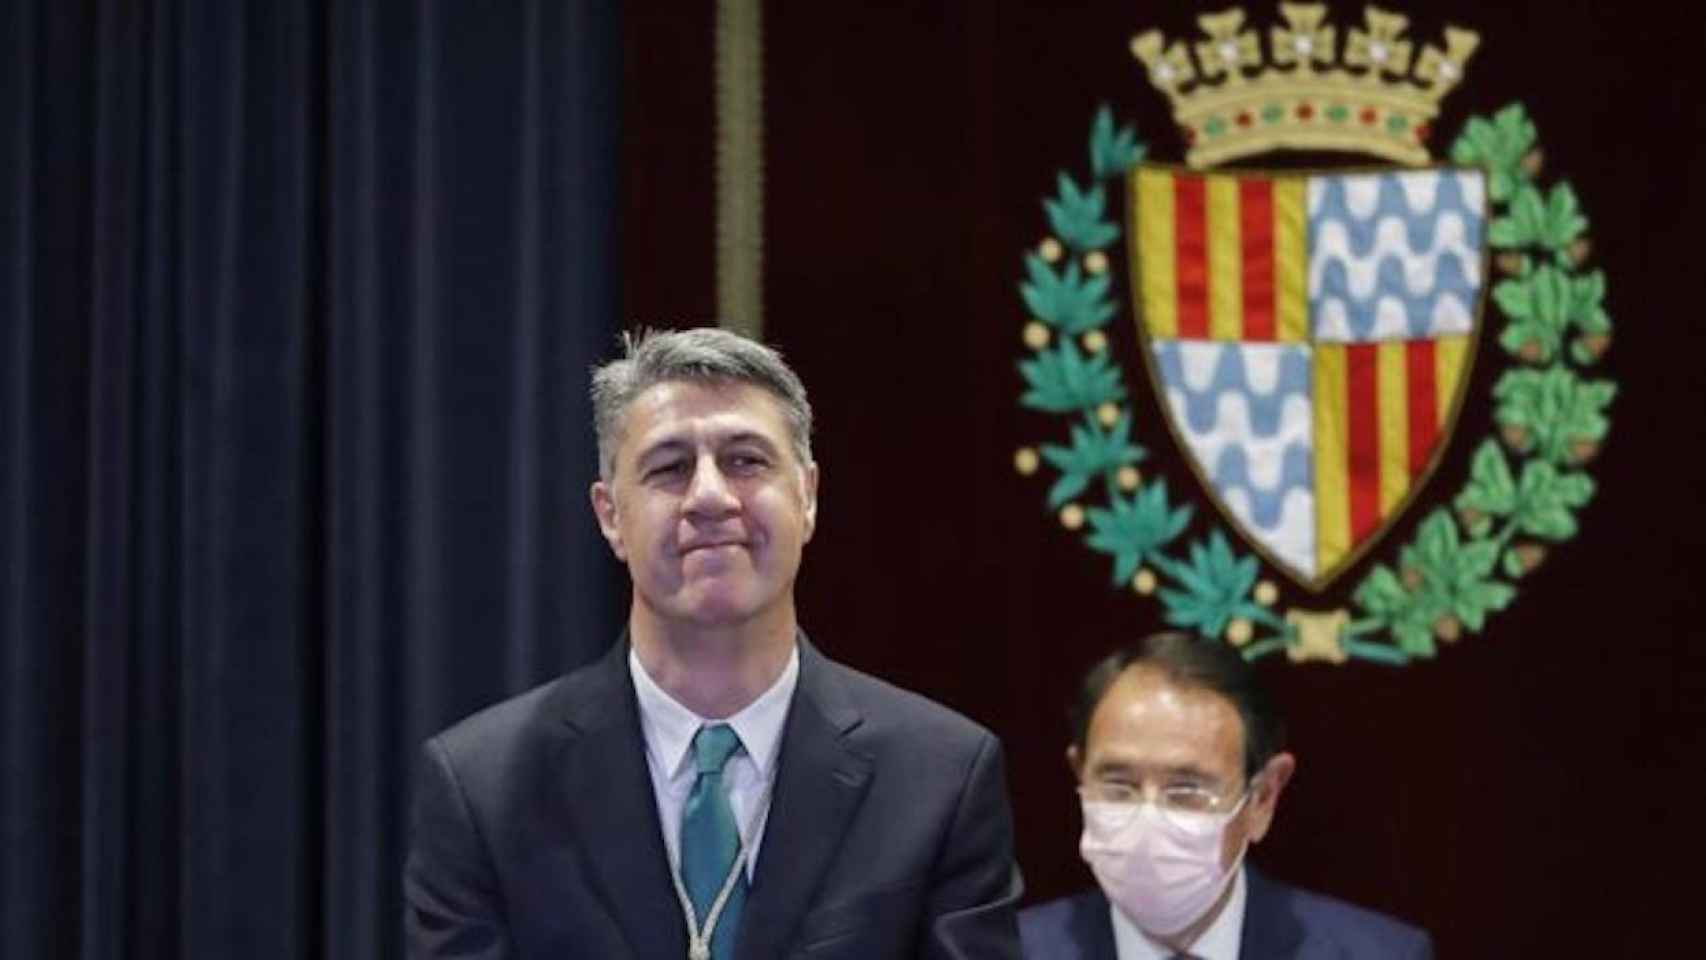 El alcalde de Badalona, Xavier García Albiol, en una imagen de archivo / EFE